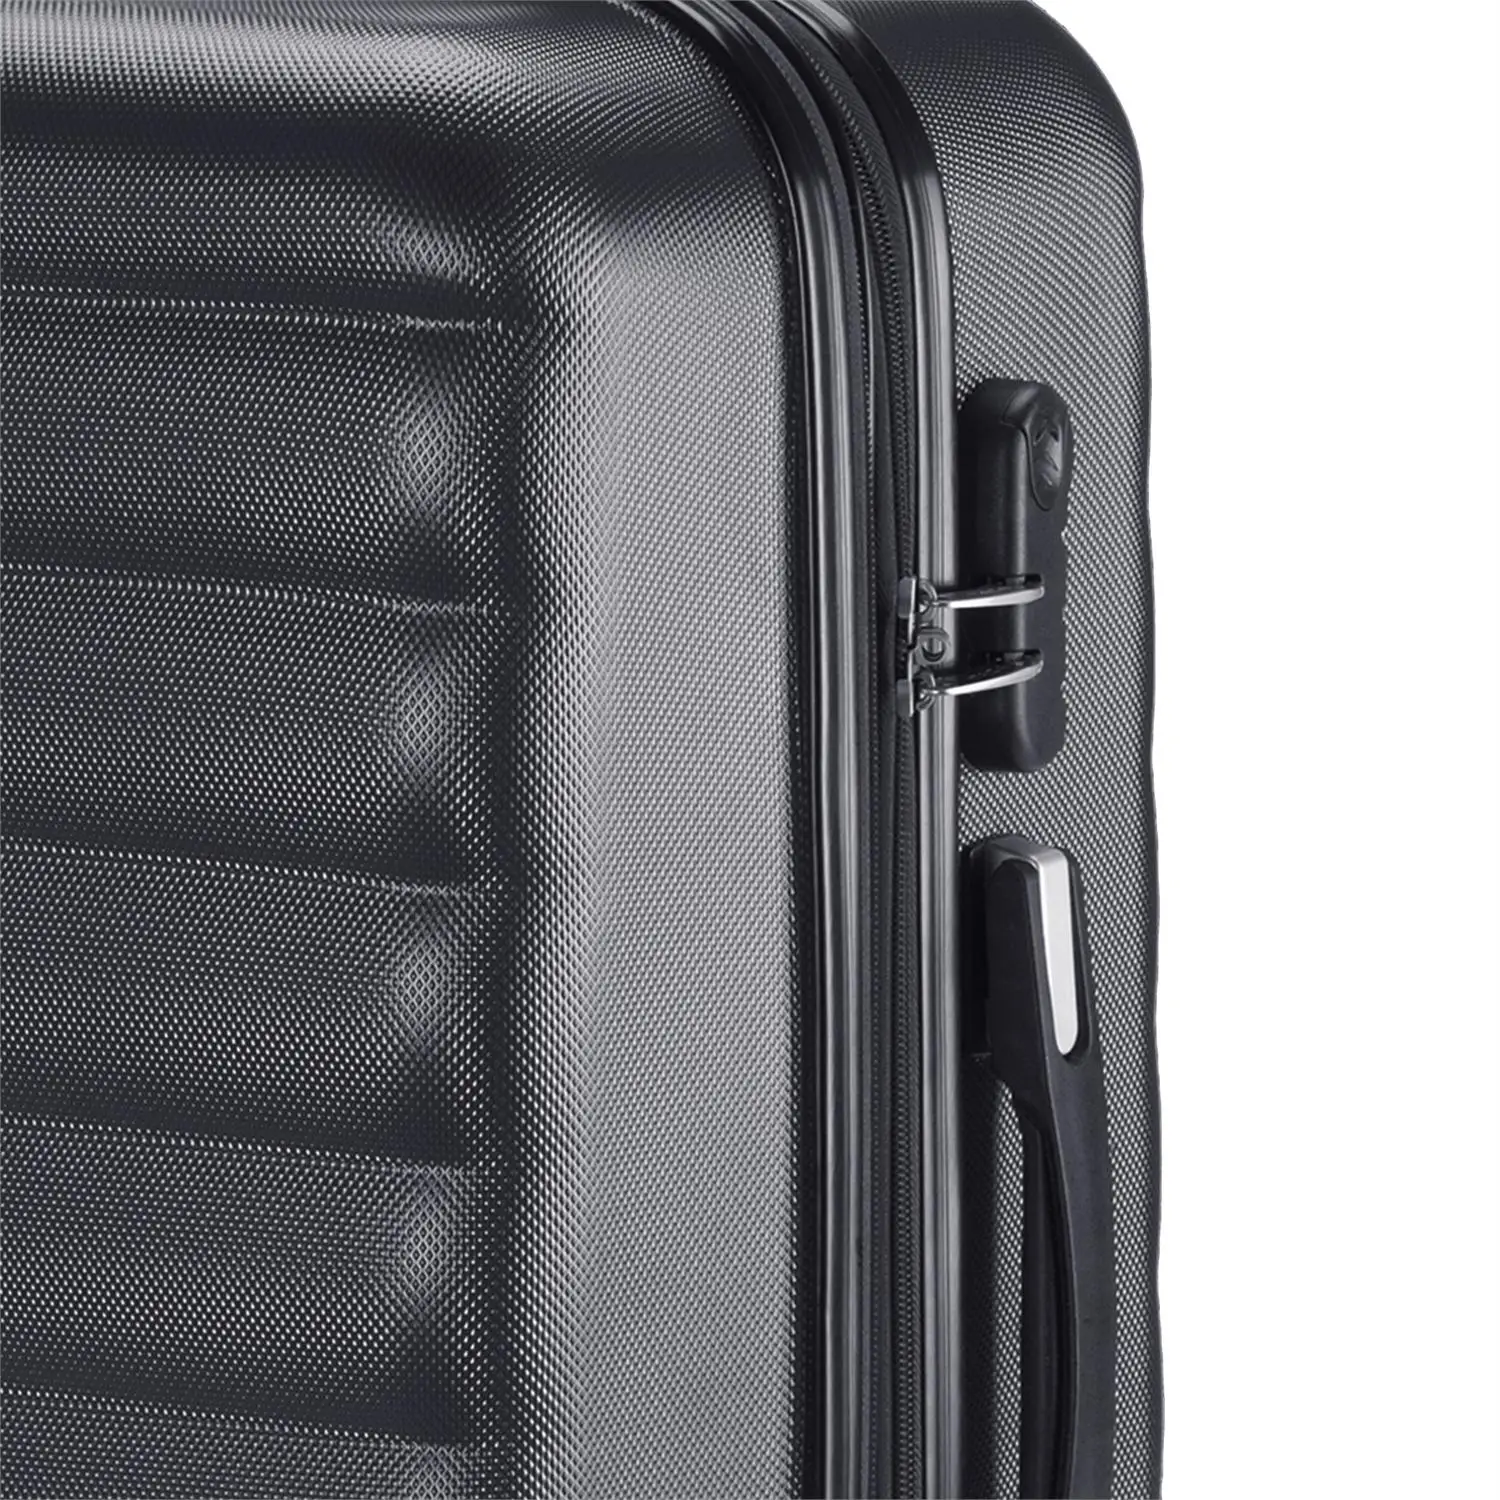 Itaca модель Tiber набор 3 дорожные чемоданы жесткий и выдвижной 55/65/75 см ABS кабина с ручкой, ручками и замком. 71200